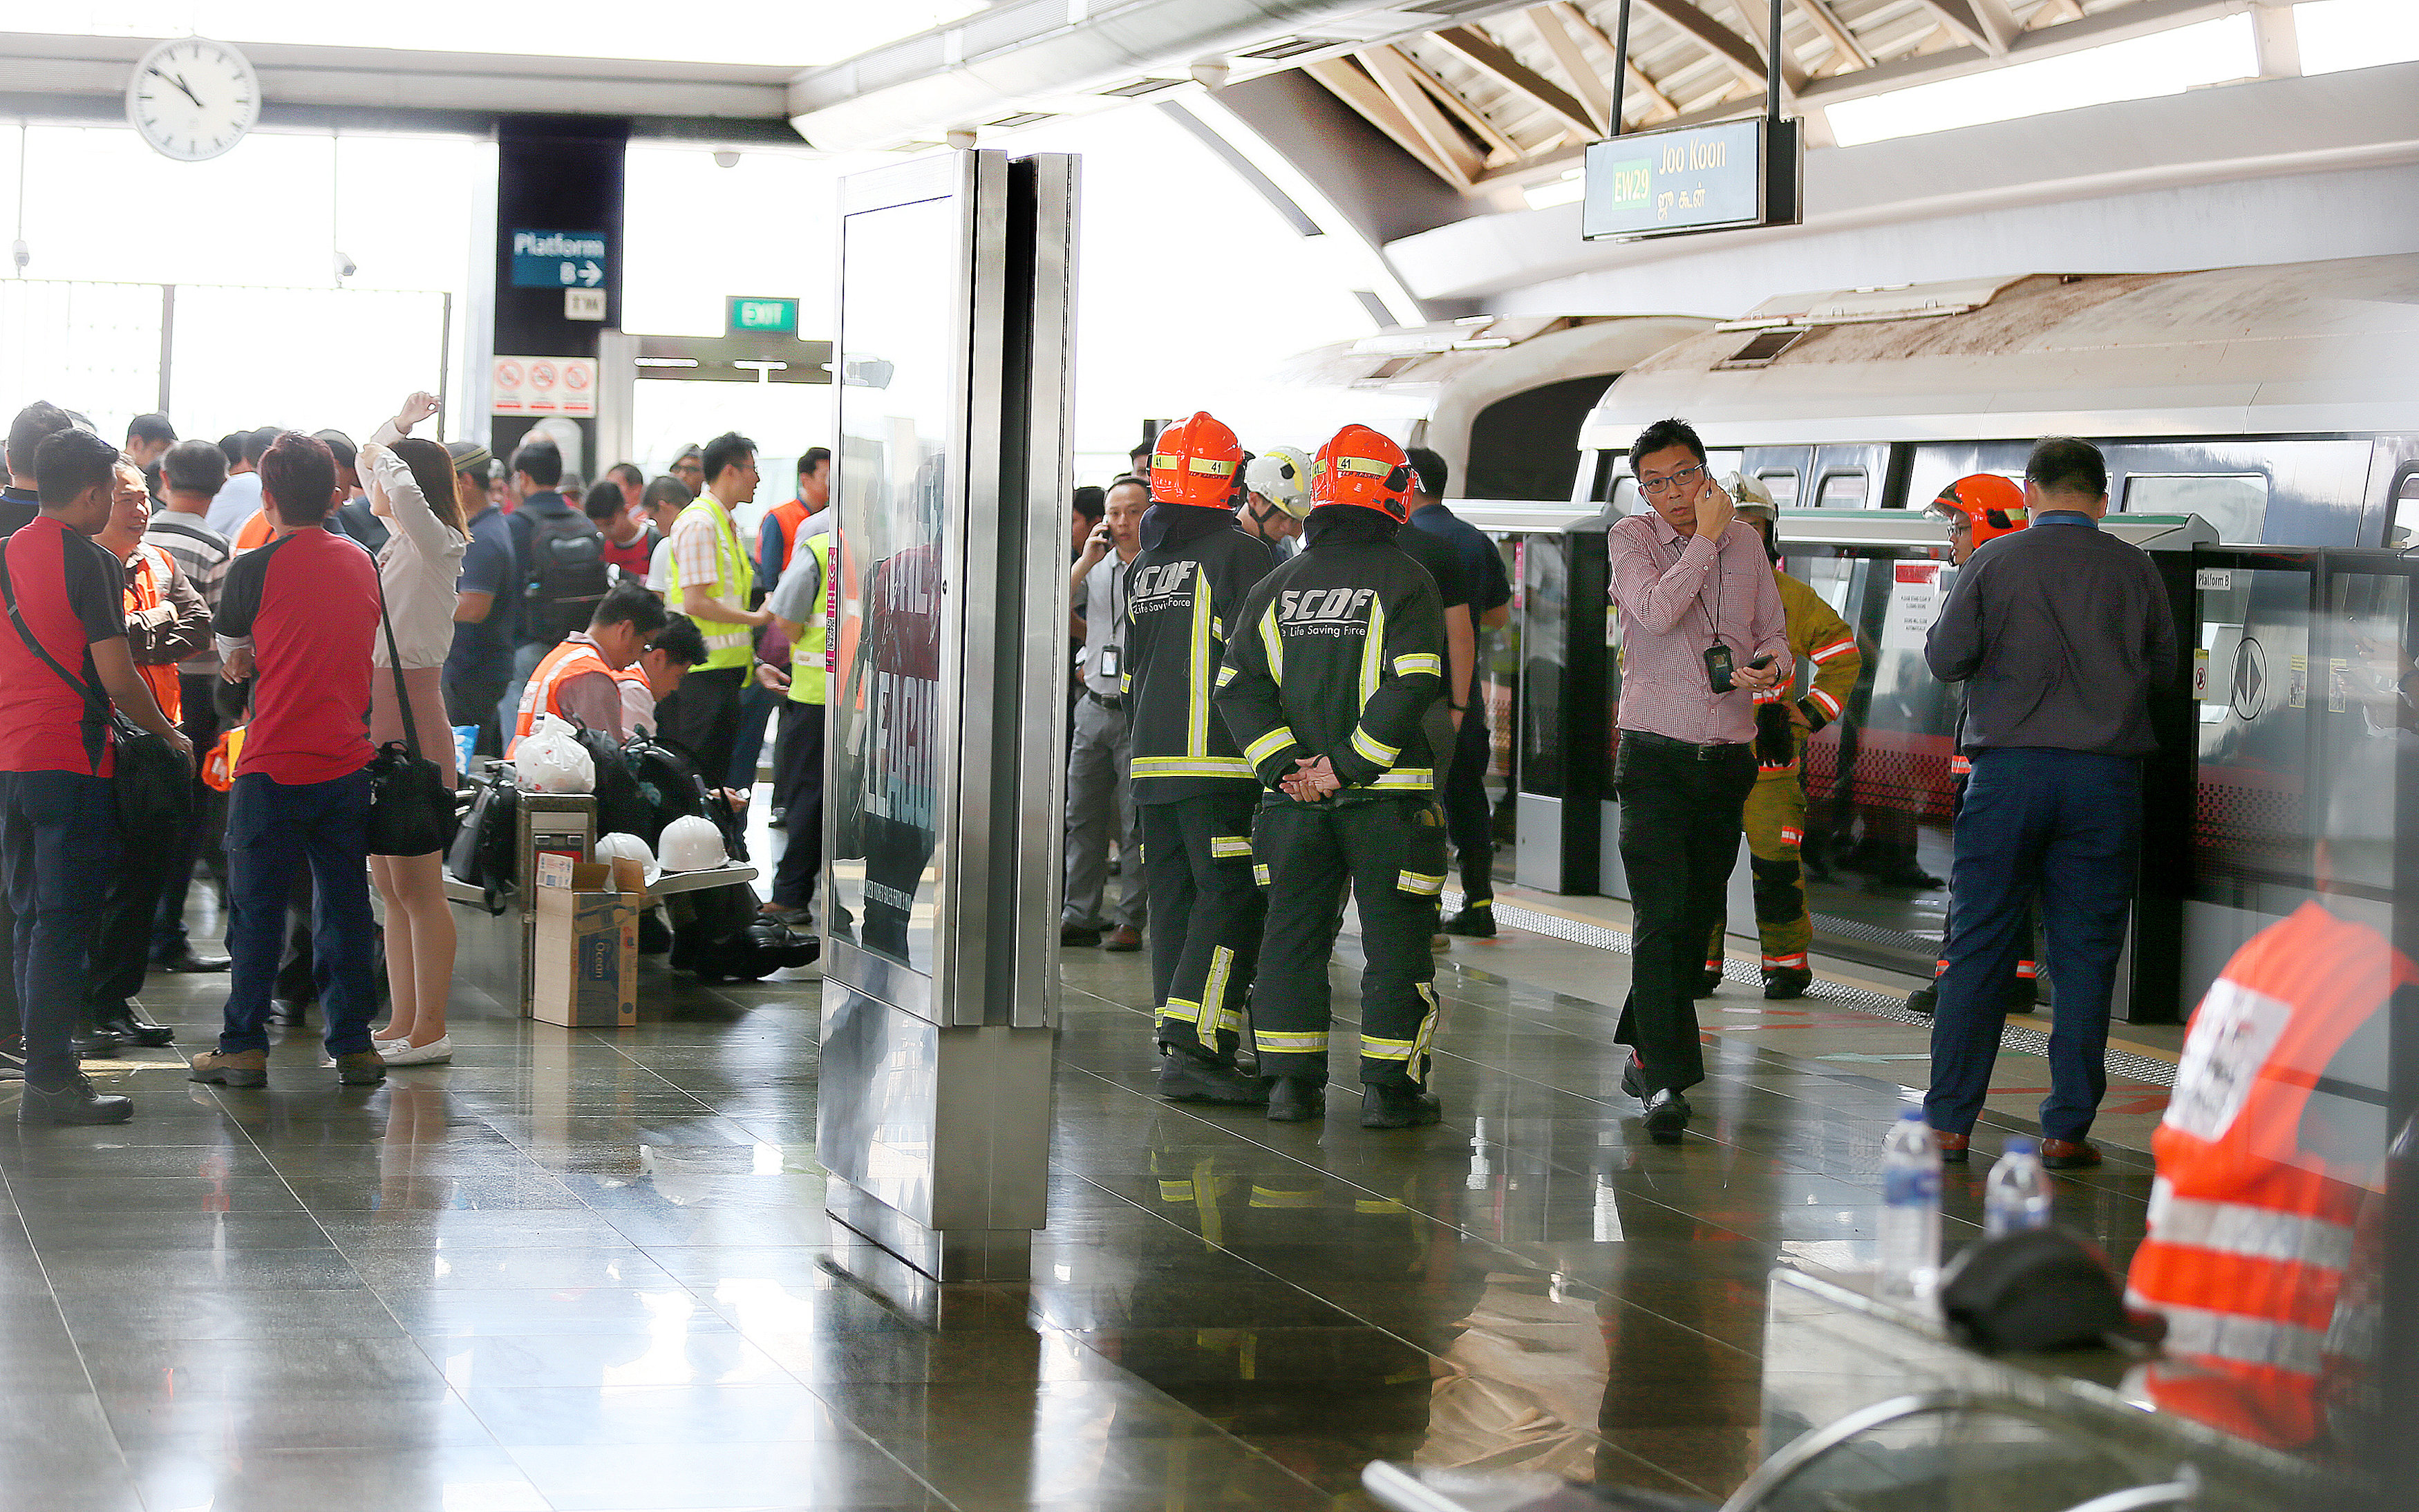 25 injured in Singapore transit train collision